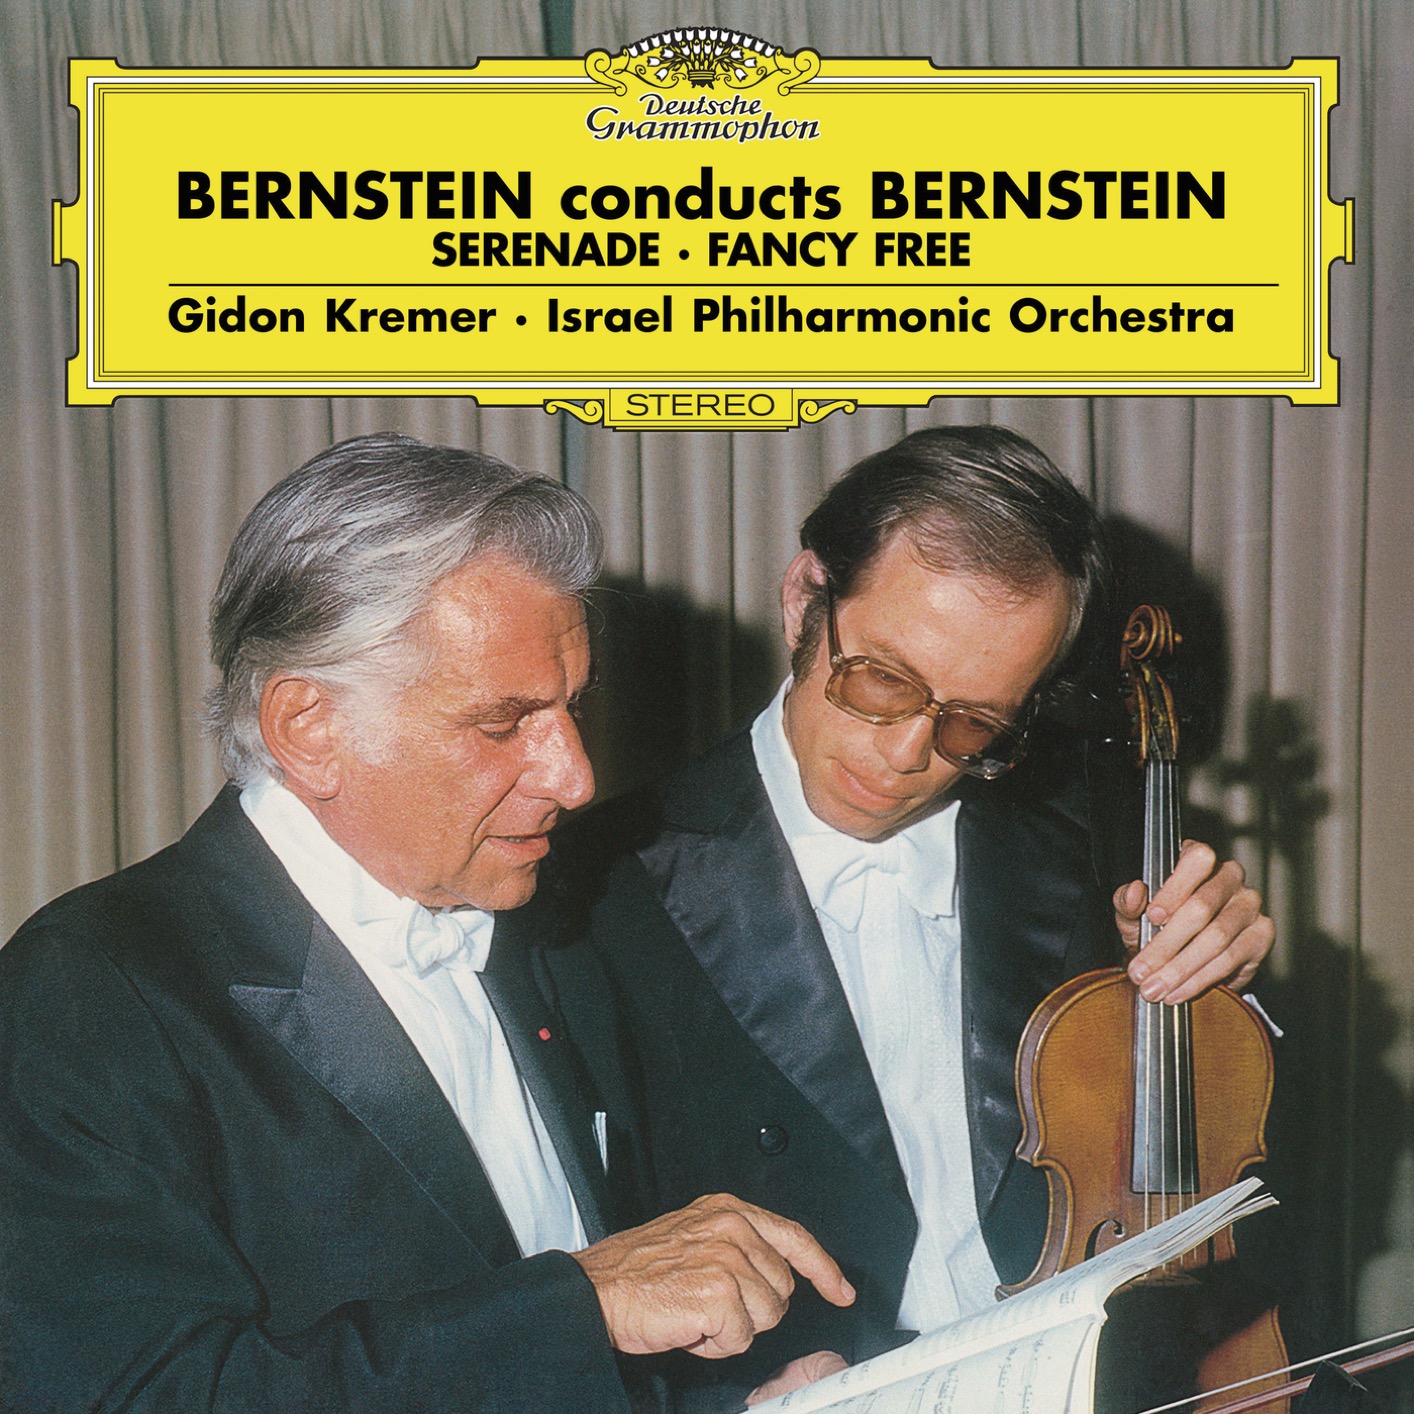 Gidon Kremer, Israel Philharmonic Orchestra & Leonard Bernstein - Bernstein: Serenade, Fancy Free (Live) (1979/2017) [FLAC 24bit/96kHz]